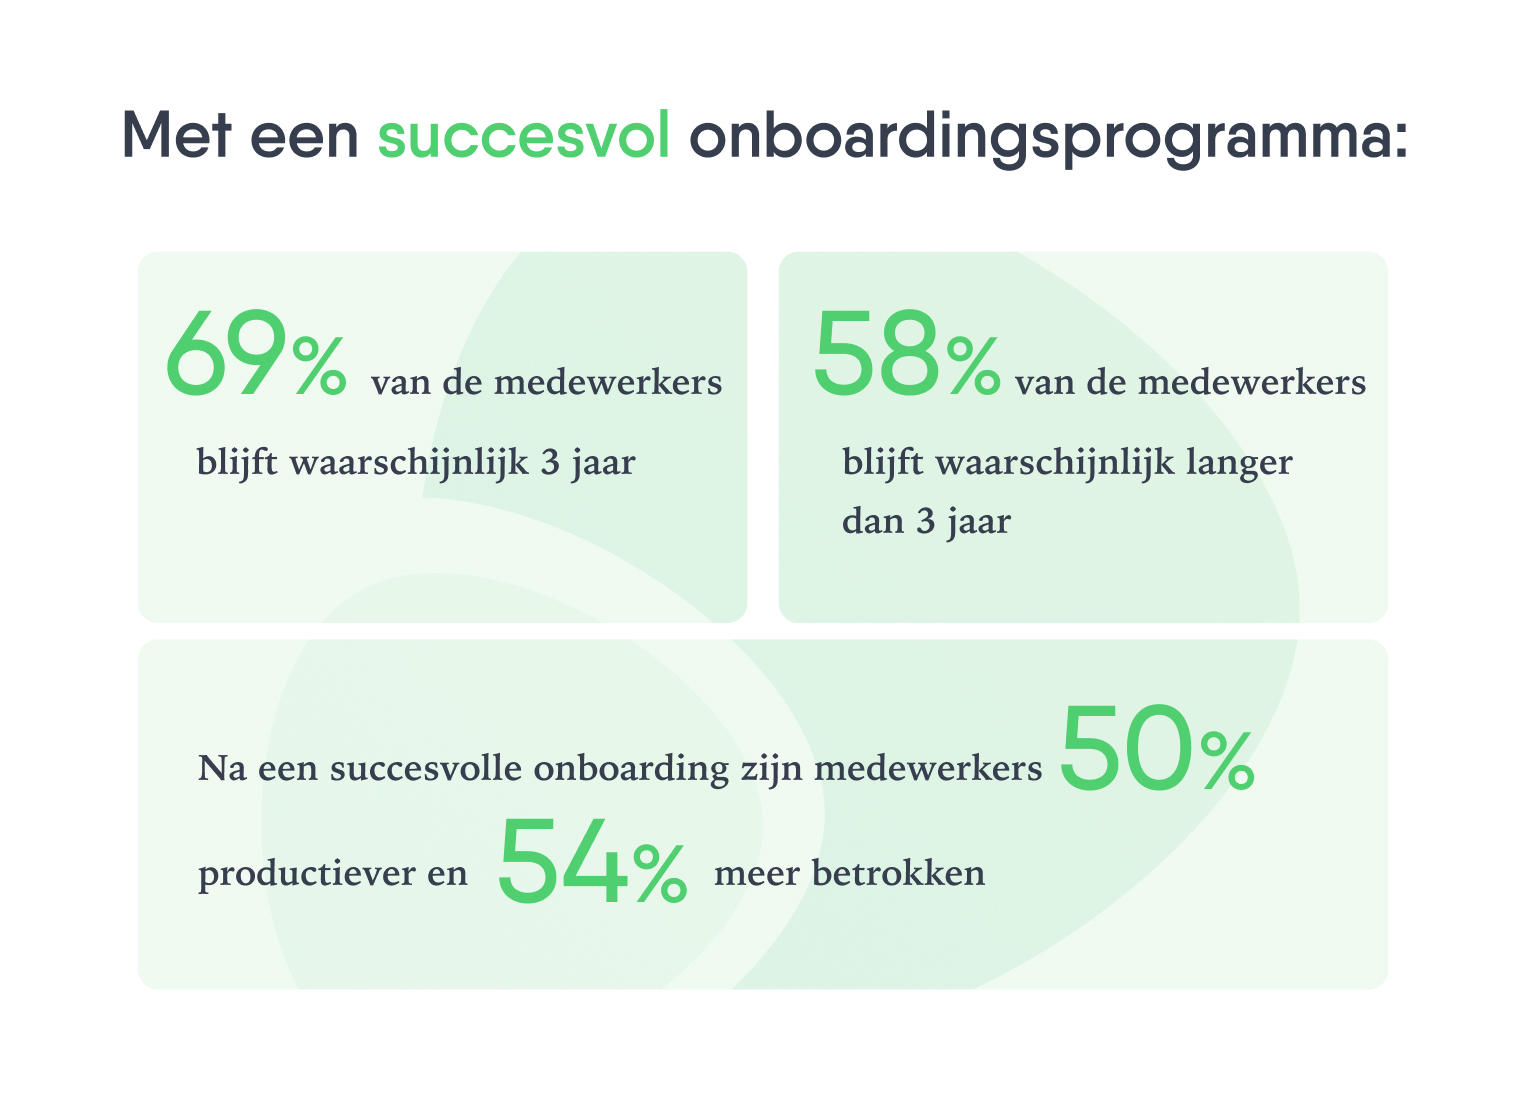 Drie groengekleurde vlakken met percentages en beschrijvingen over een succesvol onboardingsprogramma.